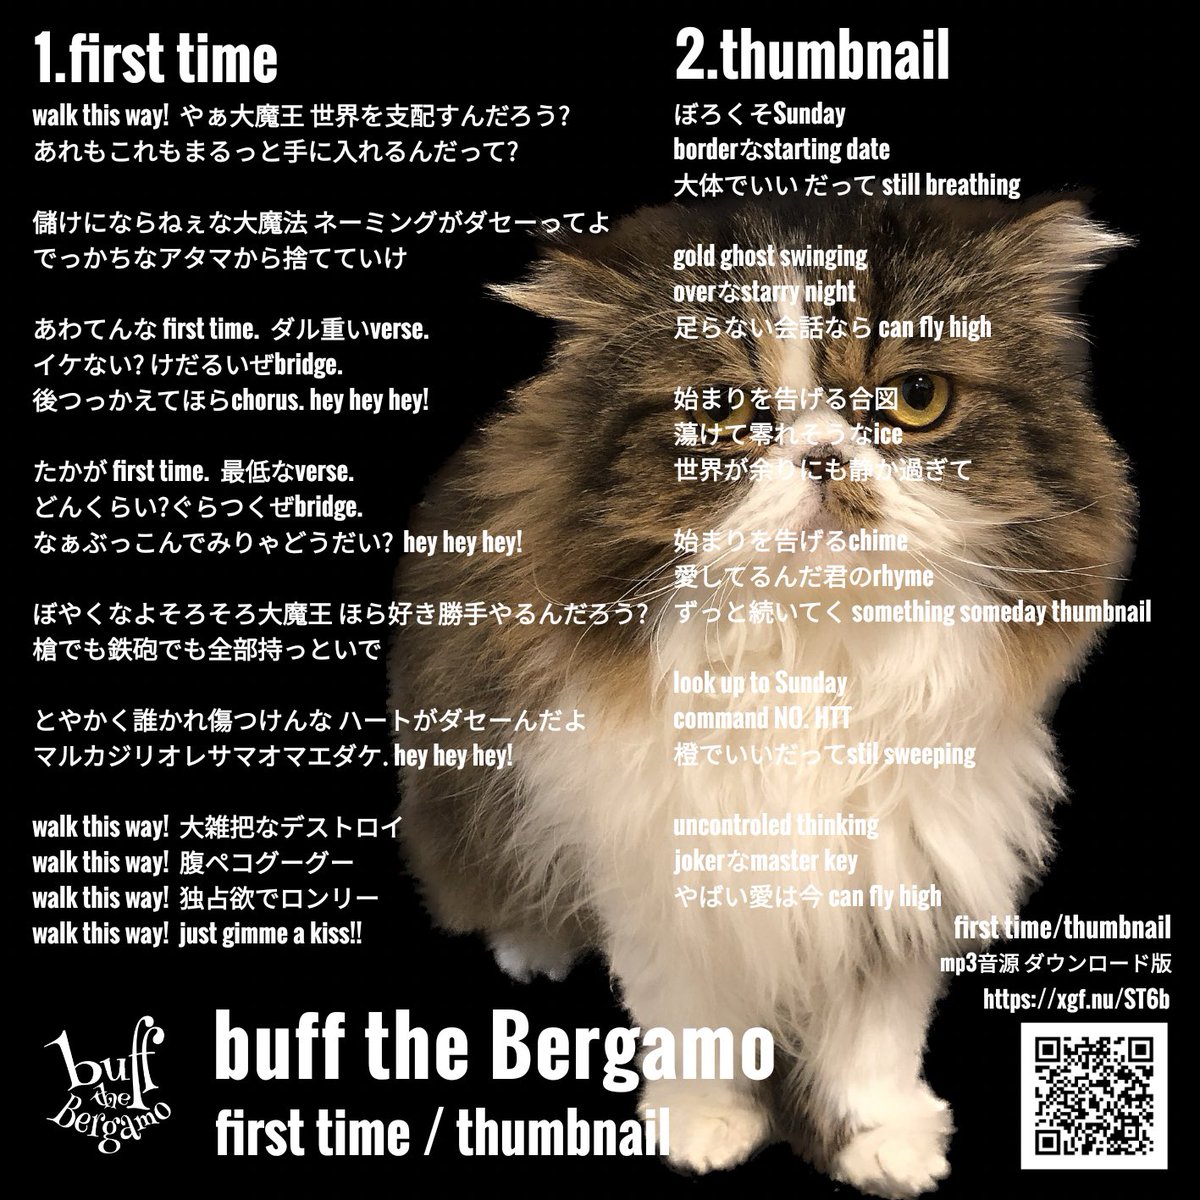 うちの猫(名はトラ)の写真をこんなに見ることはないってぐらい、石巻ーズの皆さんがベルガモCDを聞いてくださっている🥹♥️どうしたことでしょう🥹
 #buffthebergamo